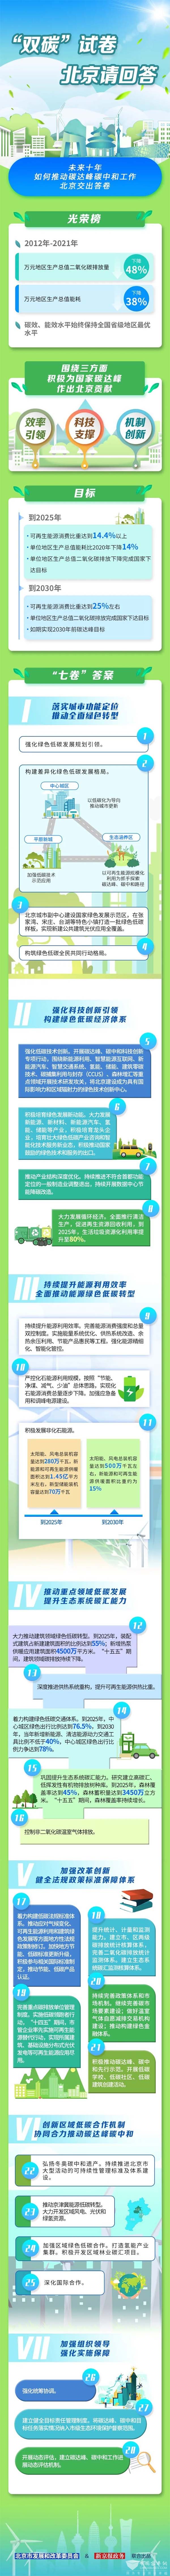 北京市 碳达峰 实施方案